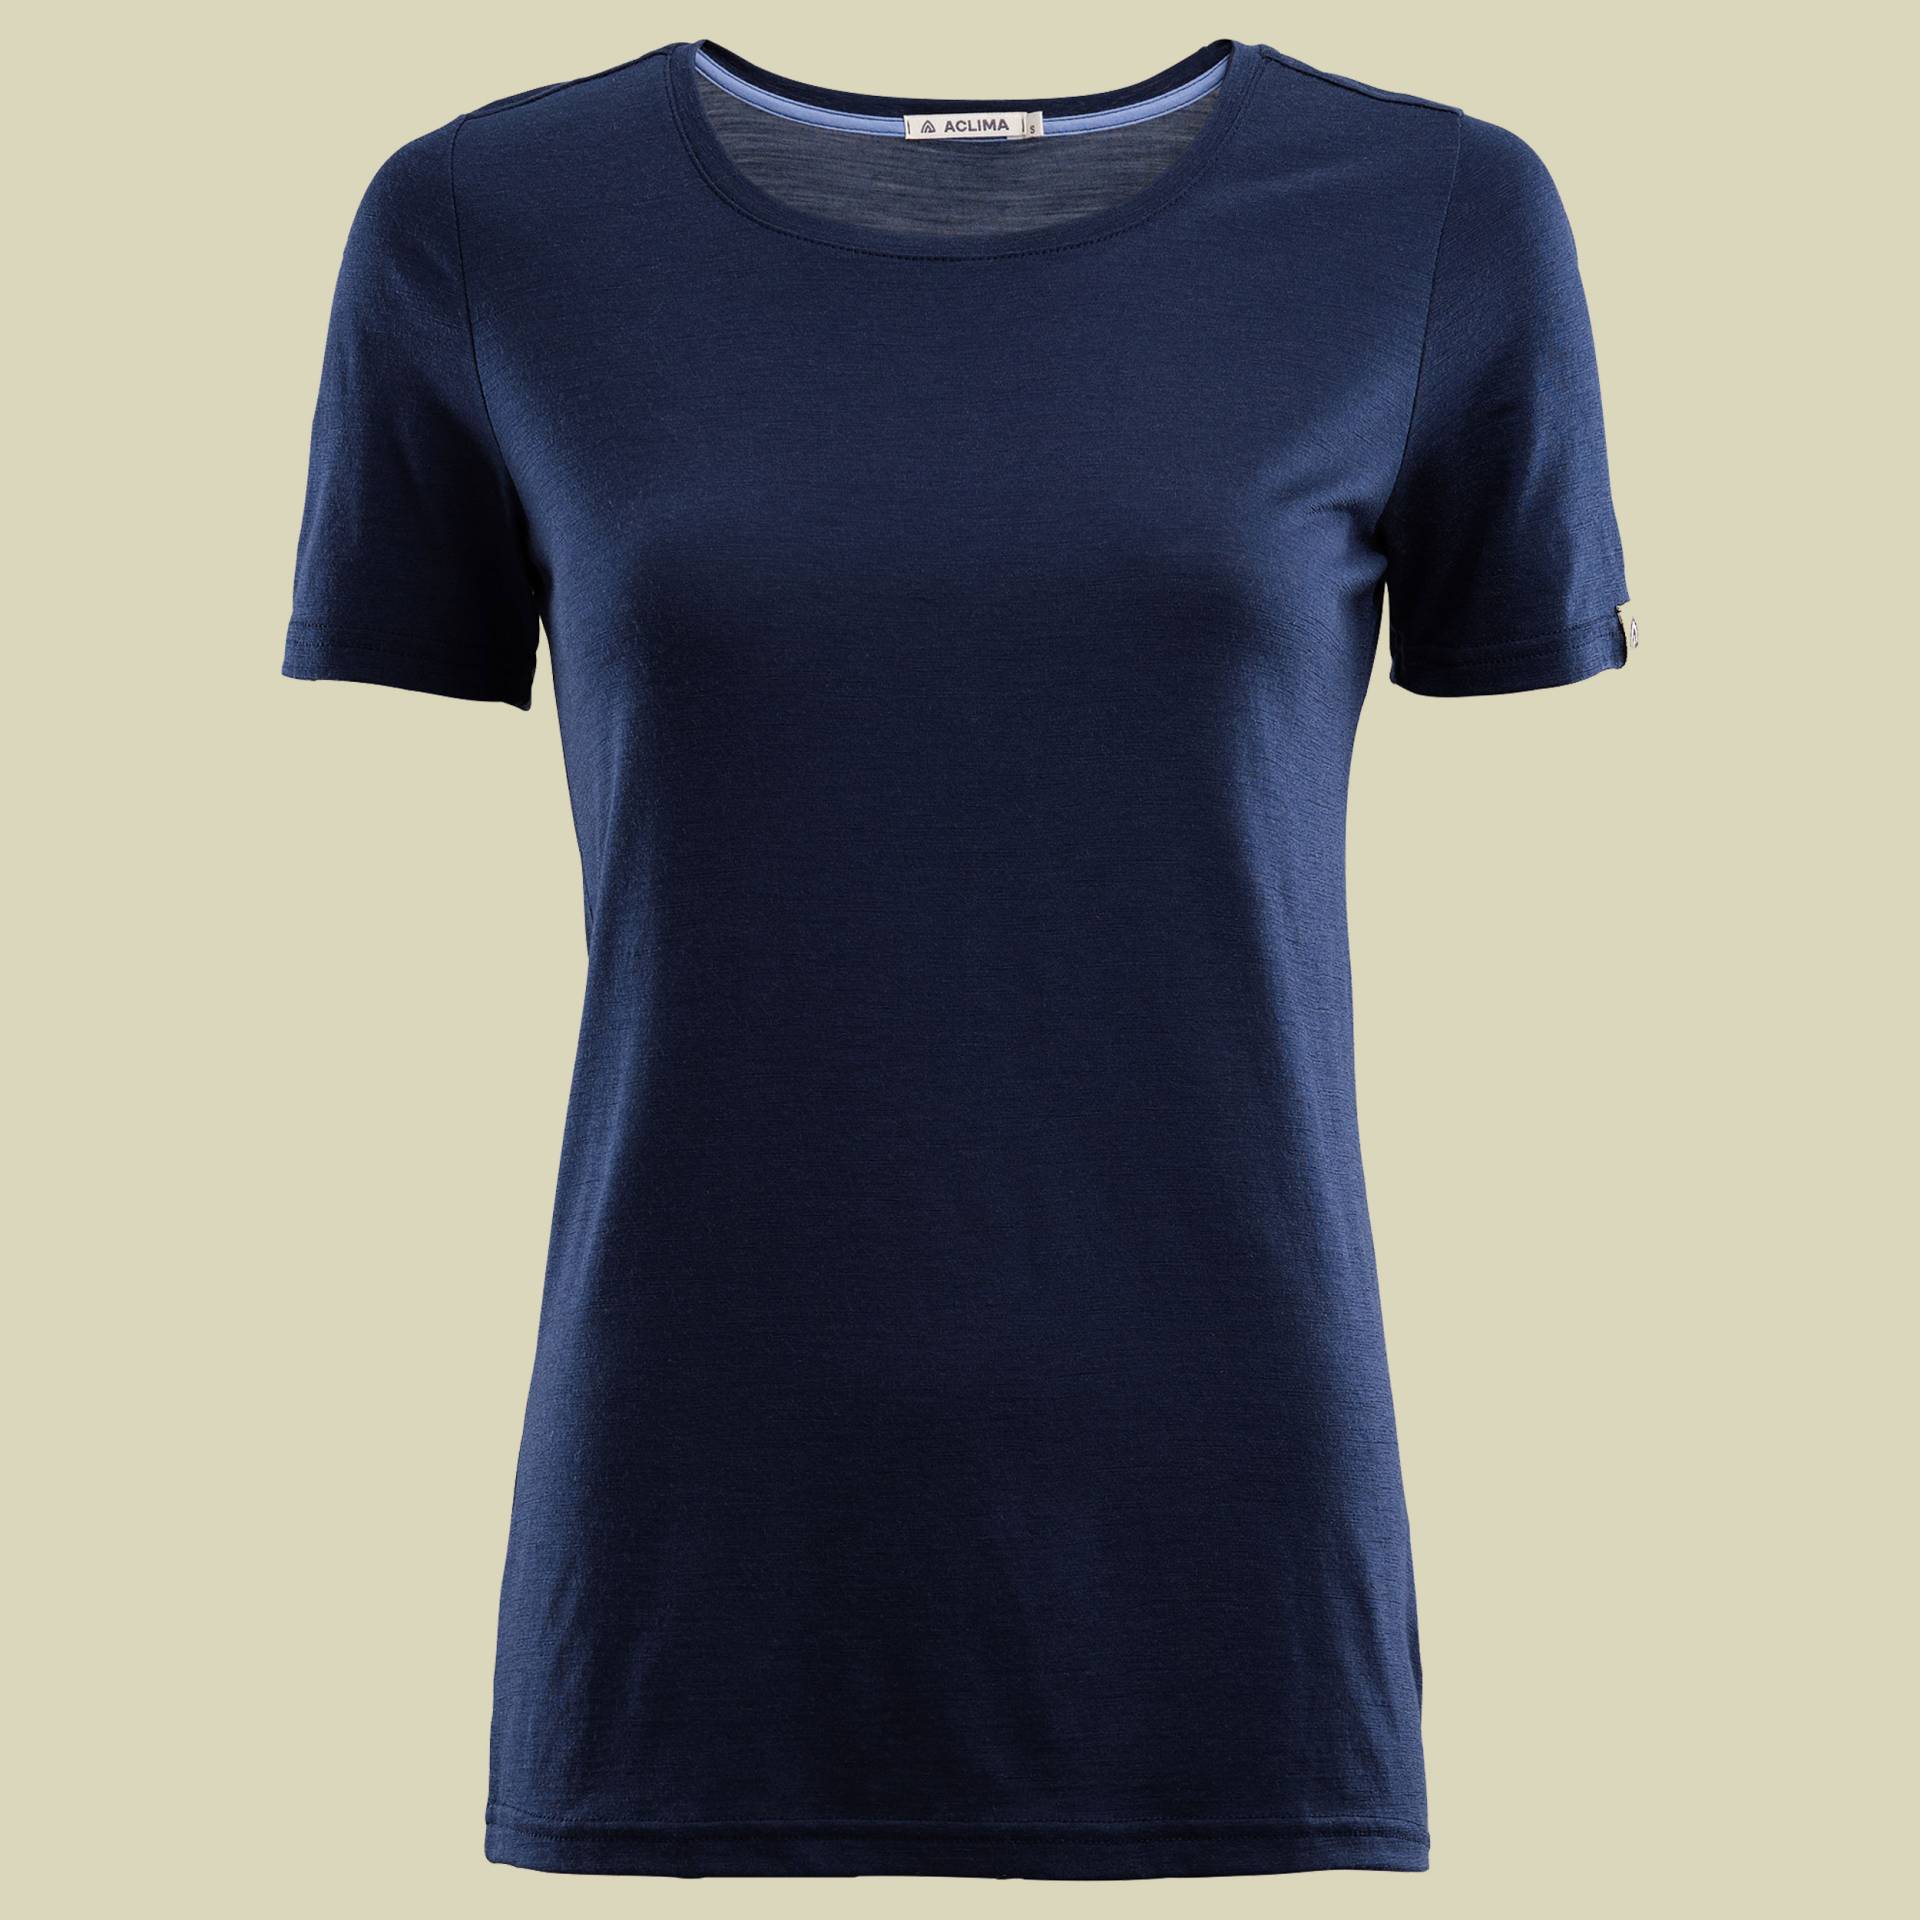 LightWool T-Shirt Women Größe S Farbe navy blazer von aclima